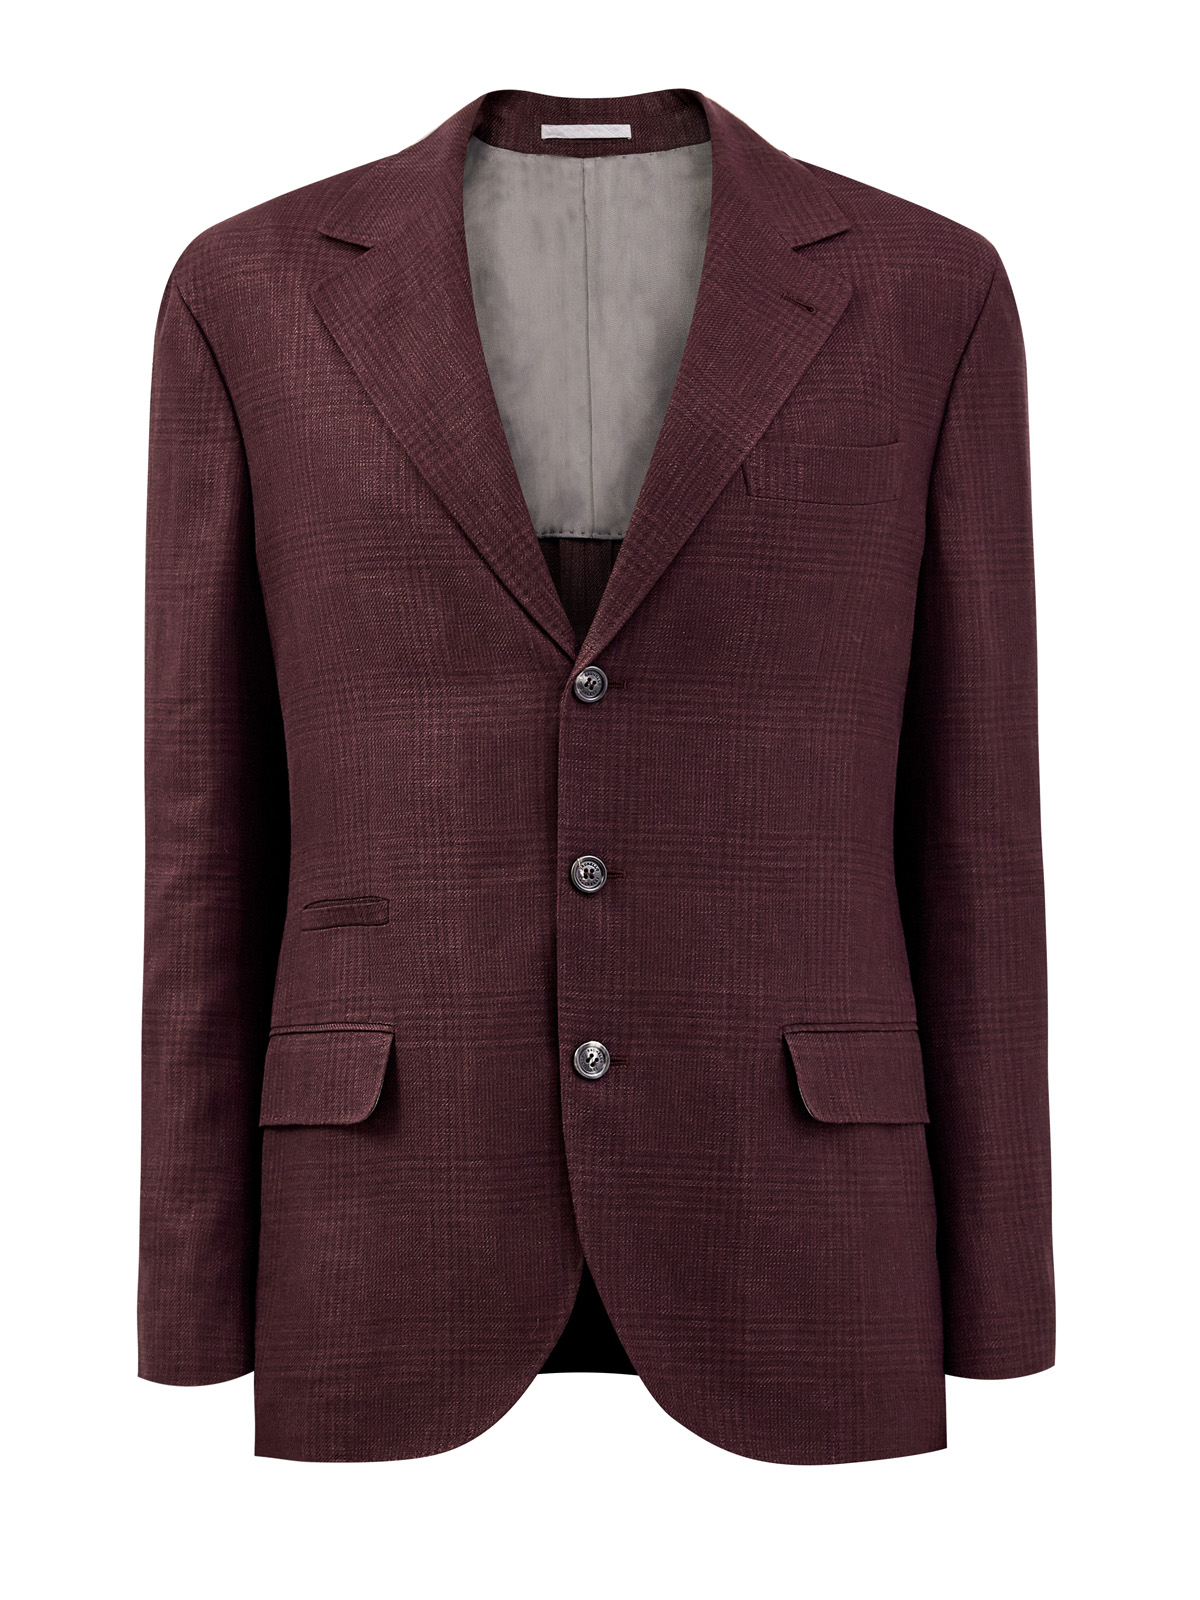 Однобортный пиджак из пряжи букле с мелованным принтом BRUNELLO CUCINELLI, цвет бордовый, размер 52;56;50